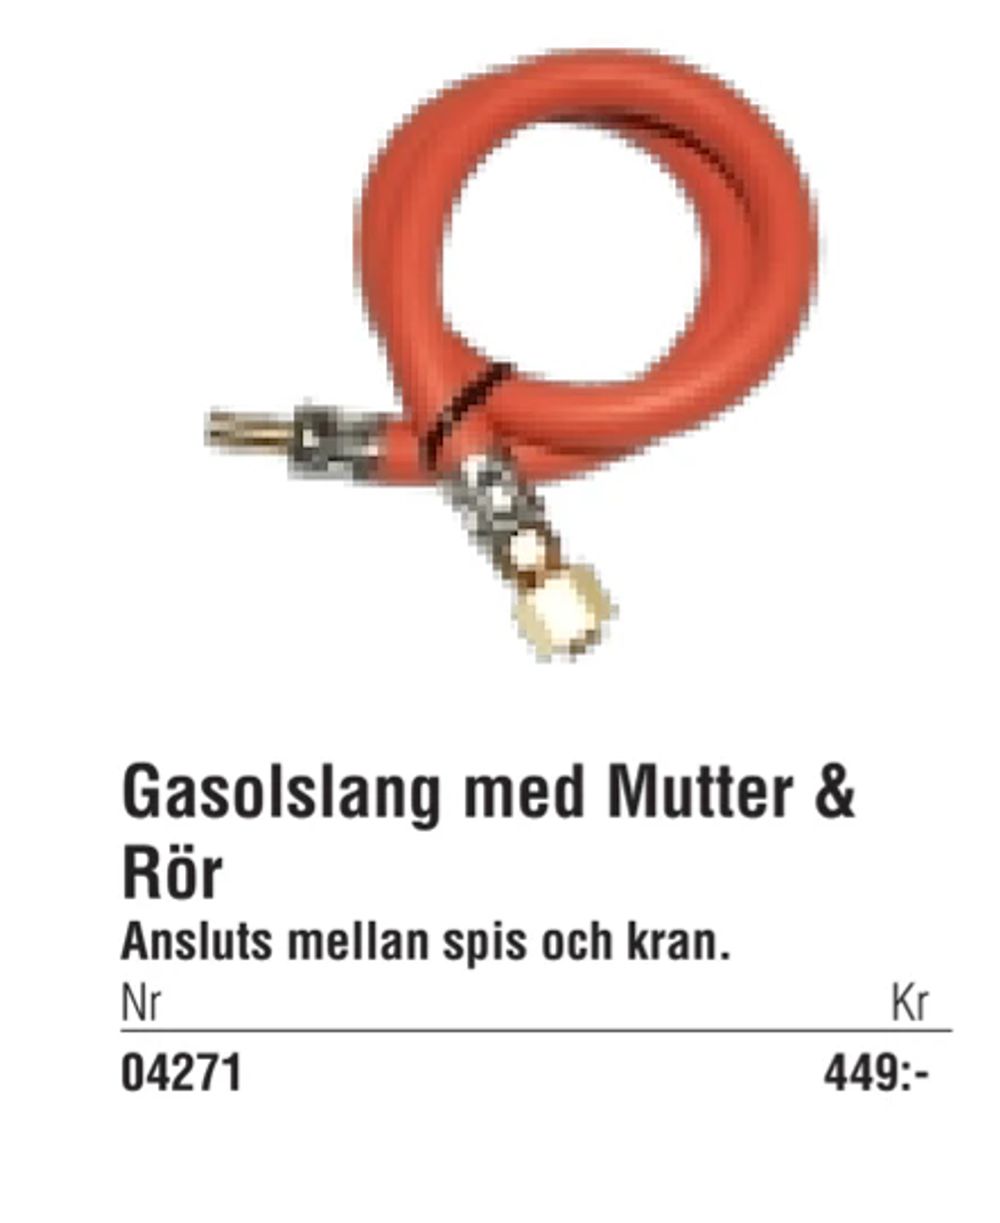 Erbjudanden på Gasolslang med Mutter & Rör från Erlandsons Brygga för 449 kr